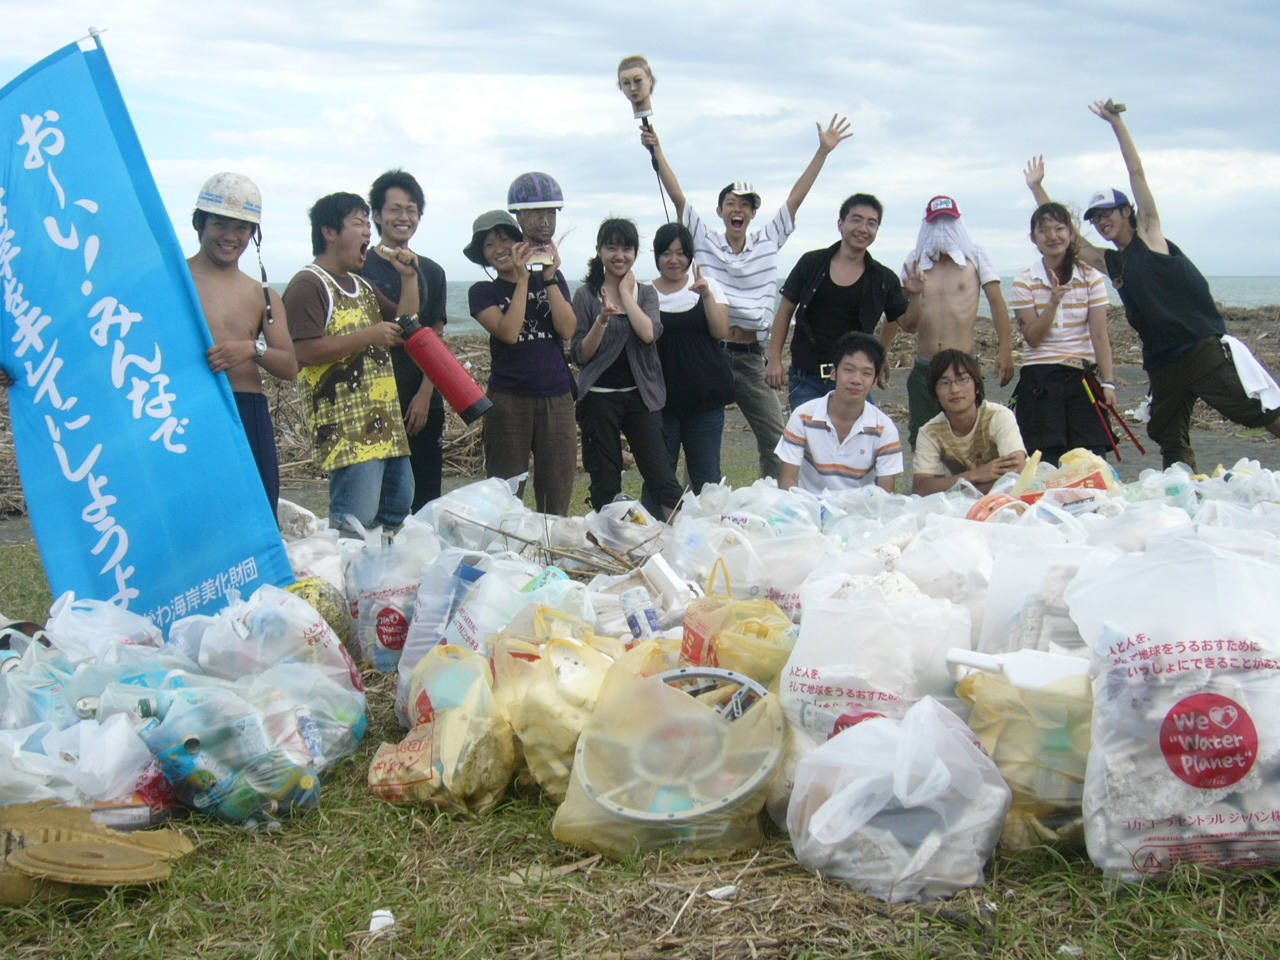 松並さんが大学時代に海岸清掃を行っていた様子。台風で大量のゴミが上がった日も、とにかく楽しみながら続けていた。